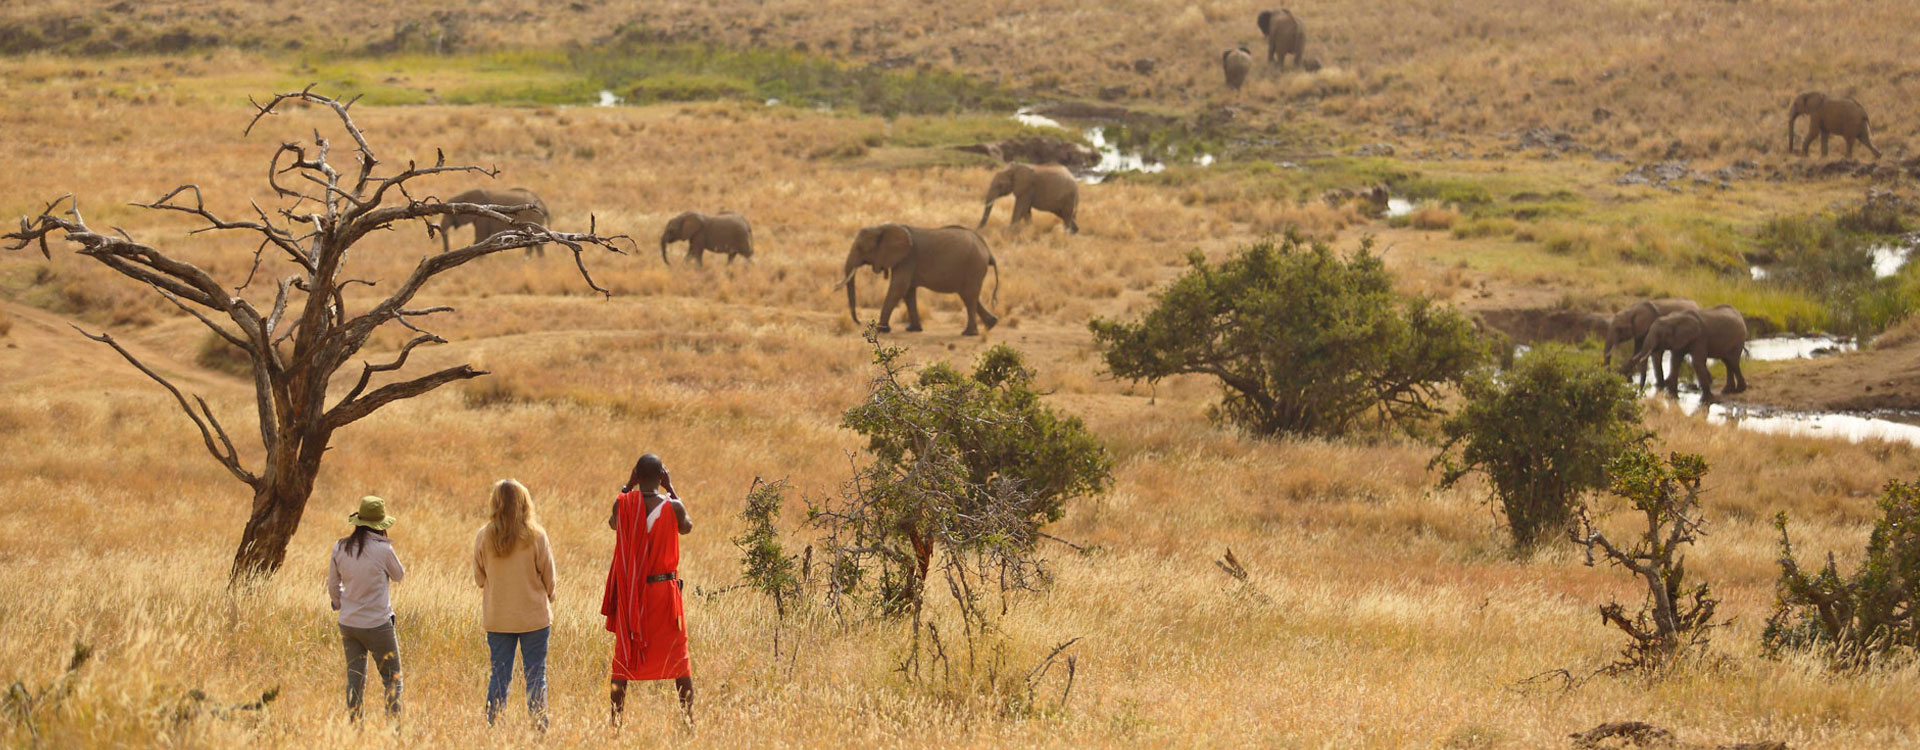 12 Day Maasai Mara and Seychelles Island